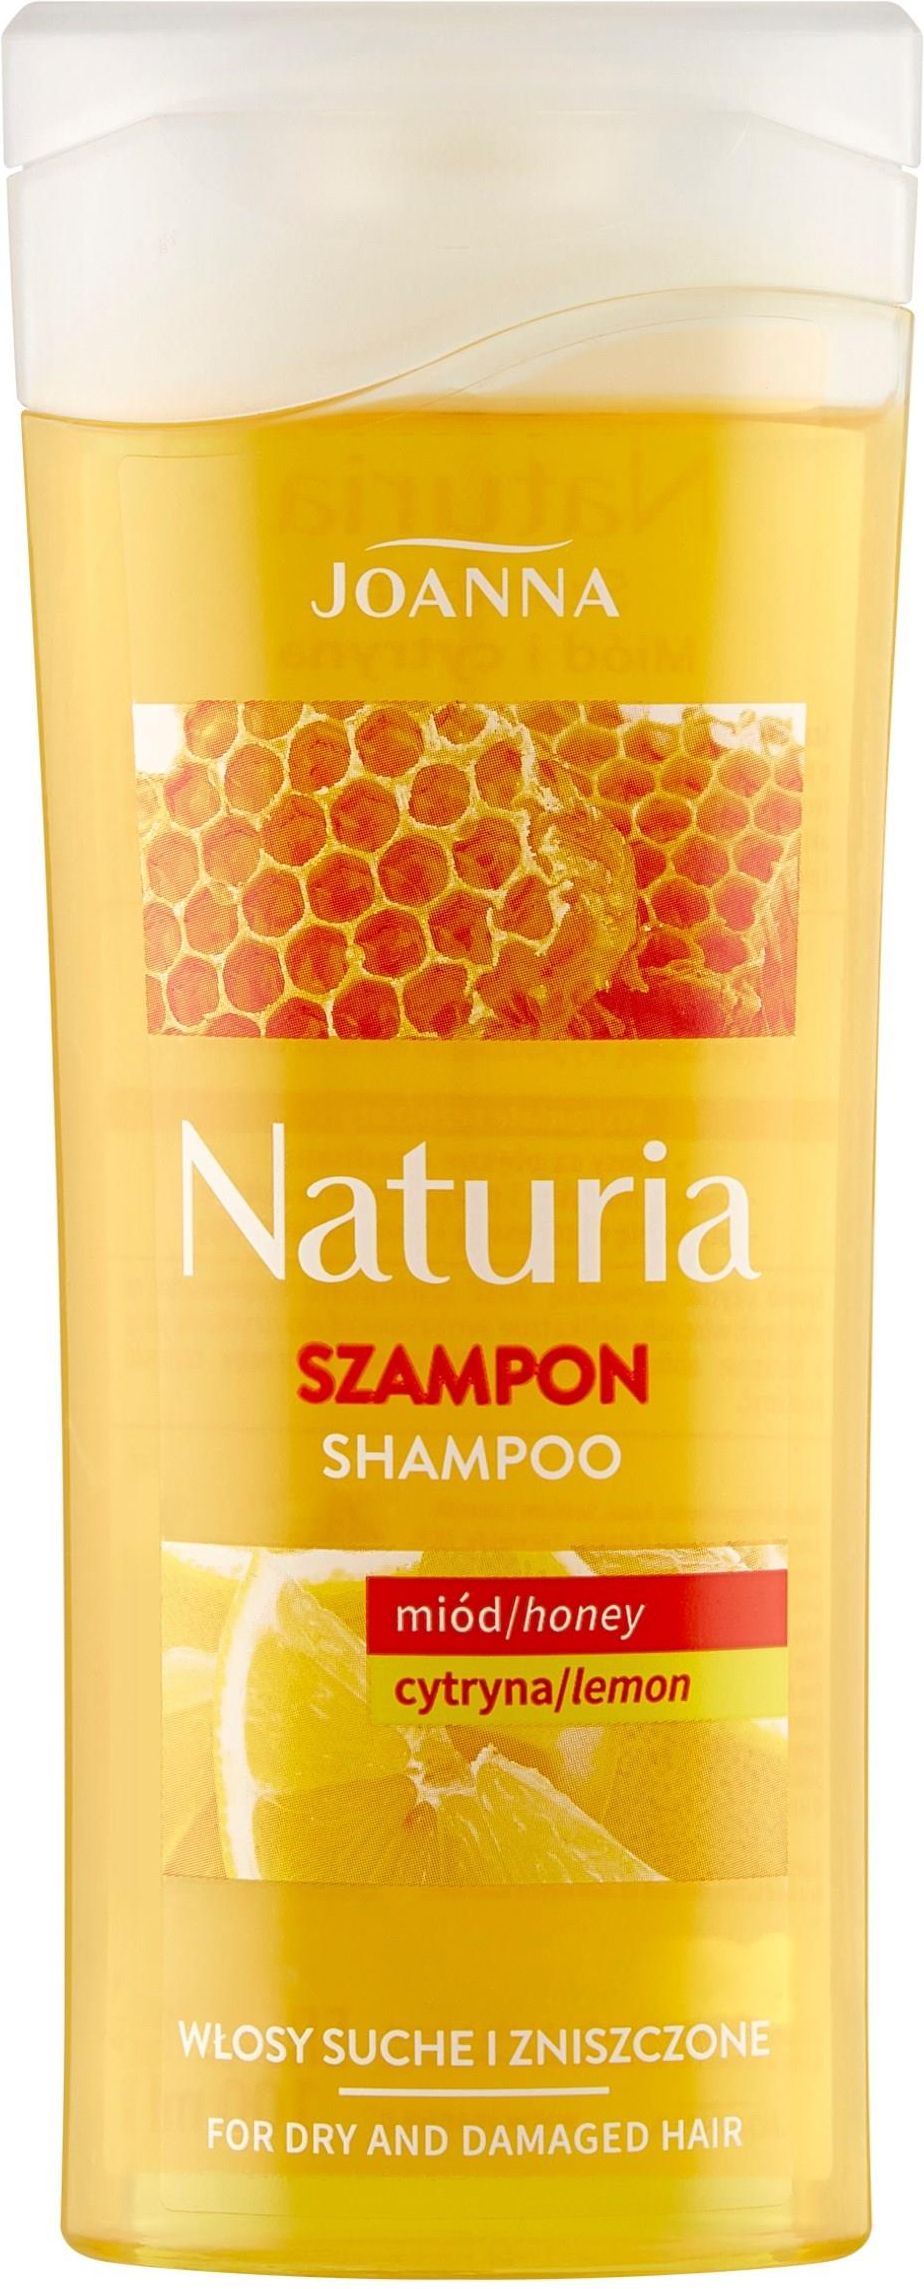 naturia szampon z miodem i cytryną